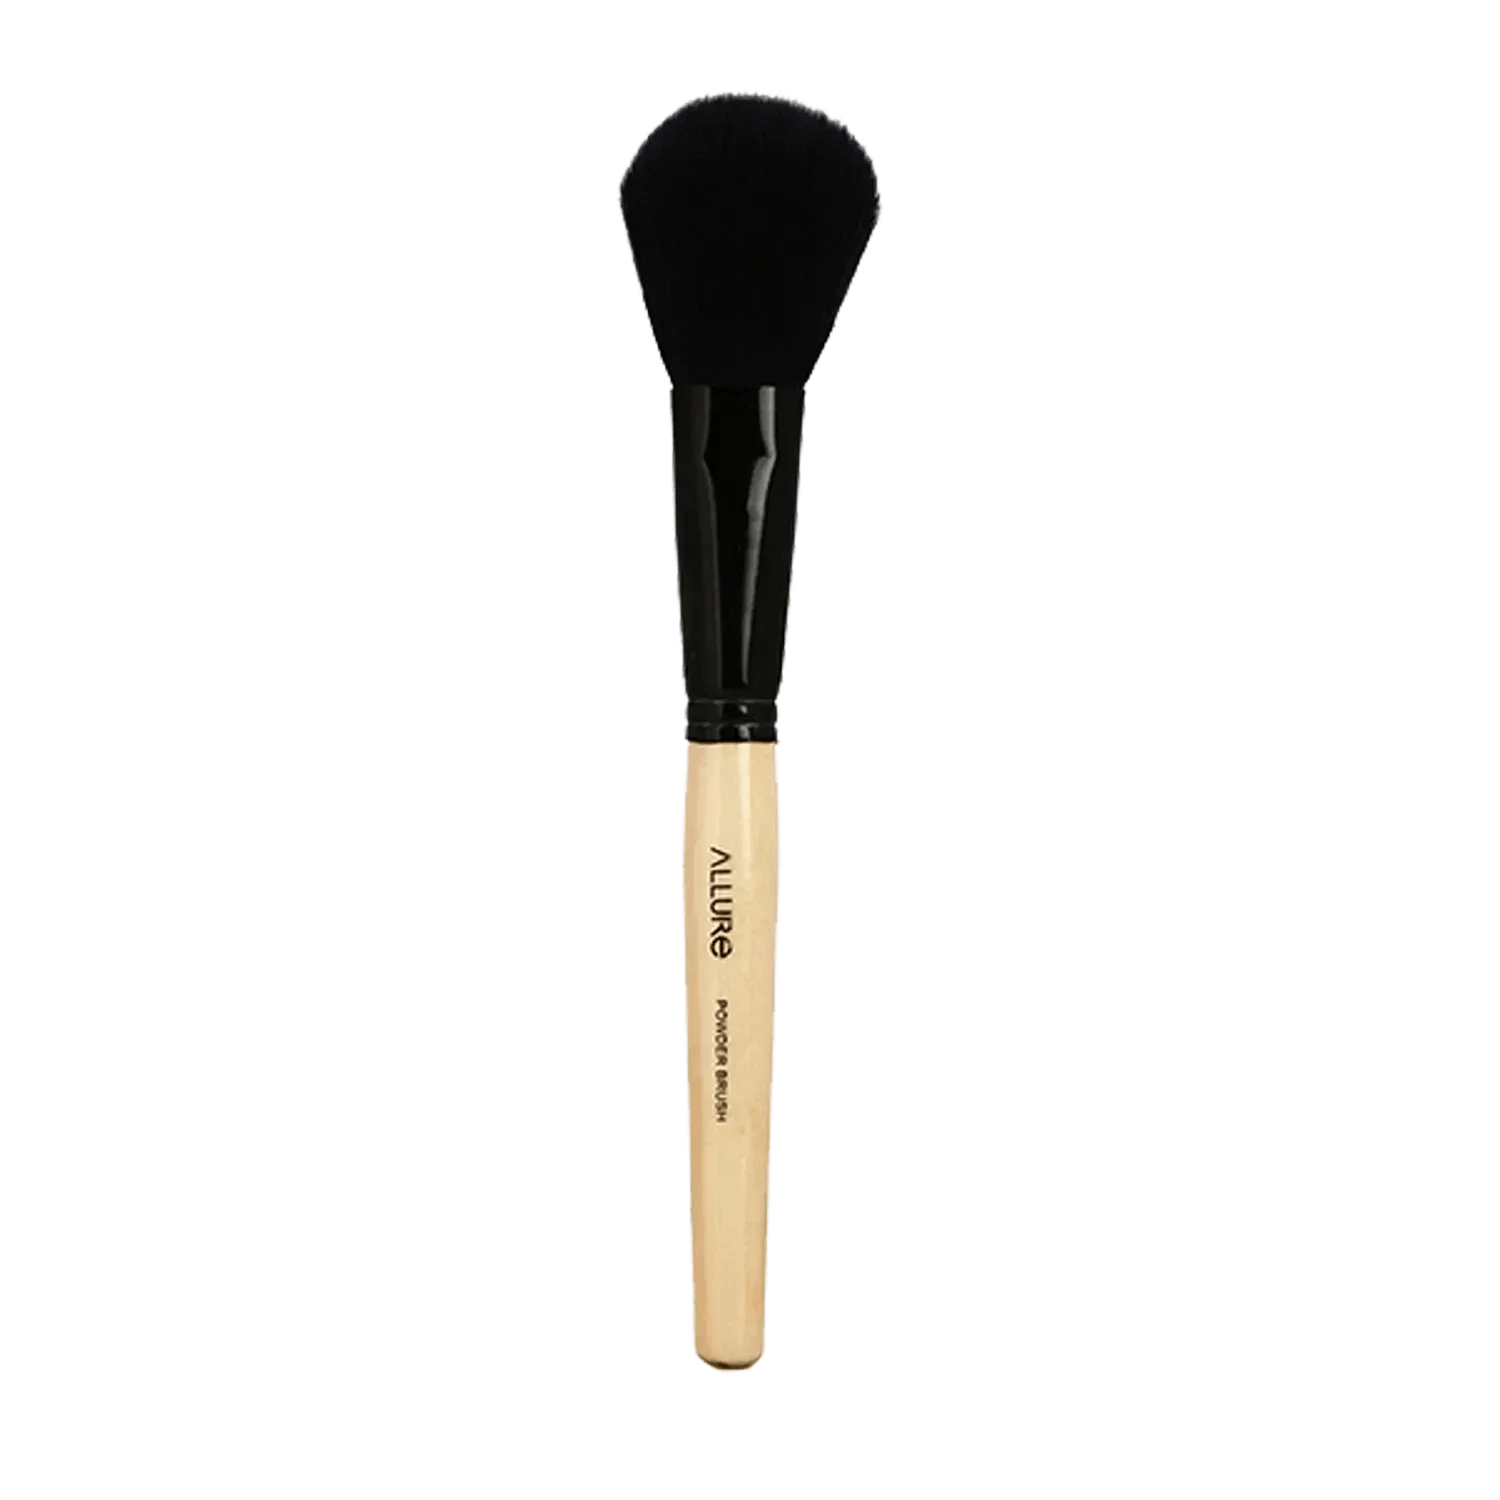 Allure Classic Powder Makeup Brush - (1Pc)